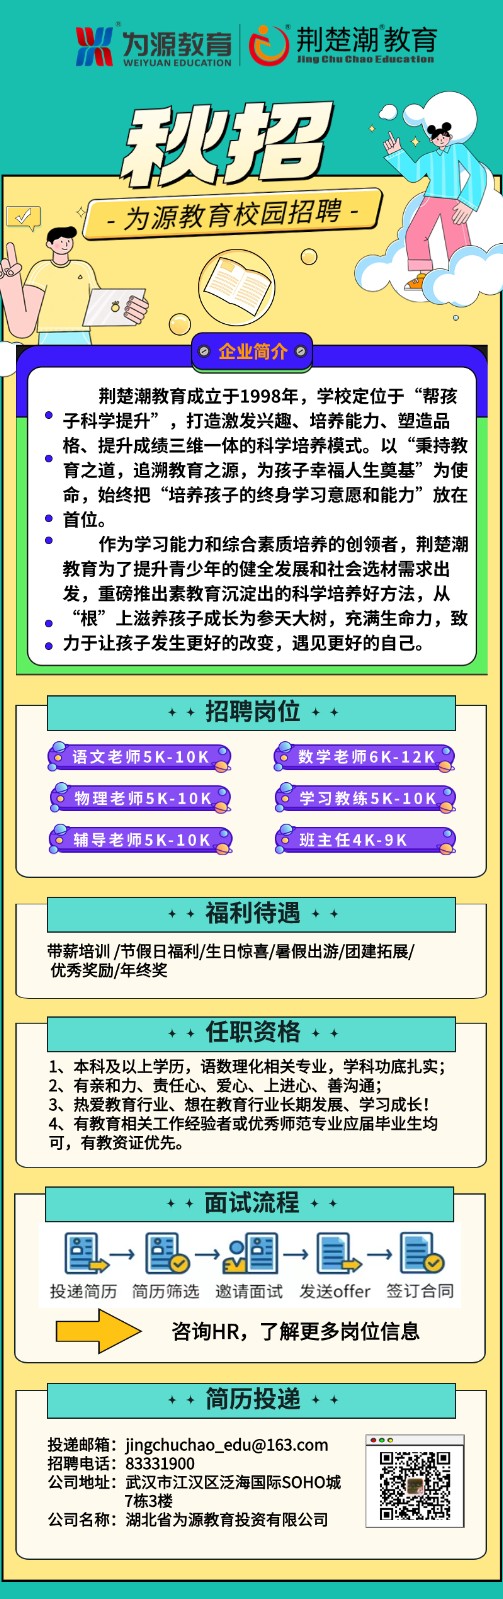 2023年秋季校园招聘海报-11月.jpg